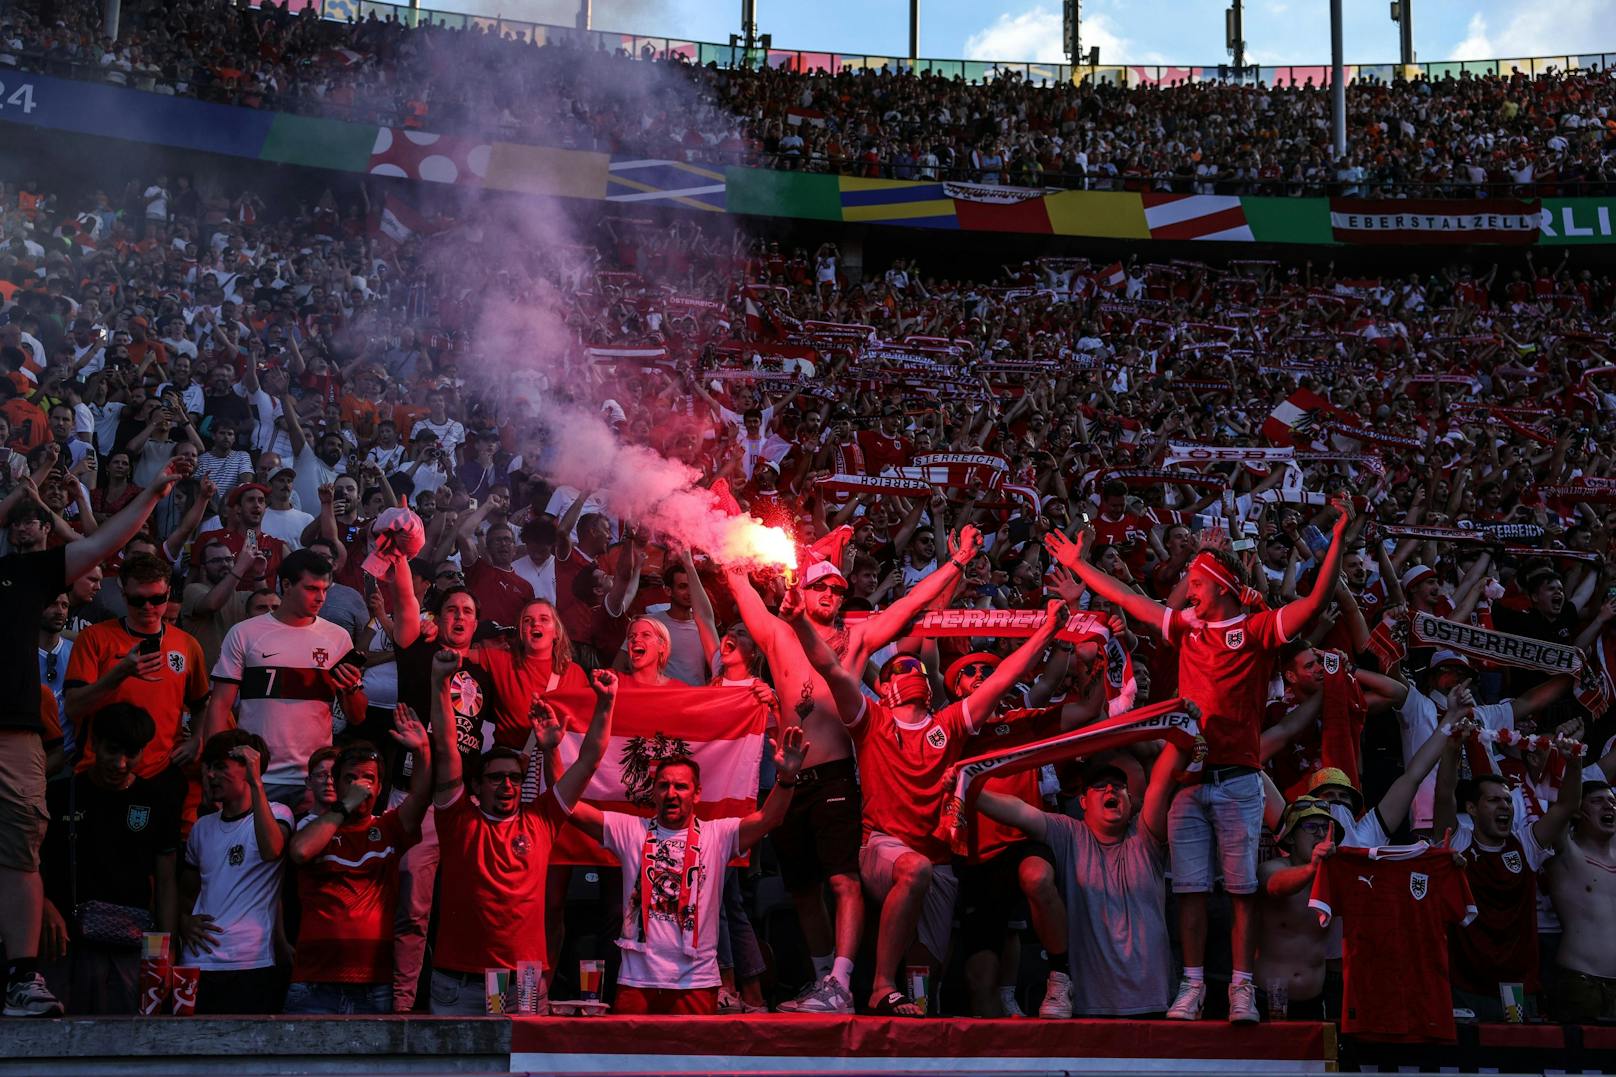 Ist Pyrotechnik ein Verbrechen? Den Österreich-Fans war das nach dem furiosen Sieg egal.